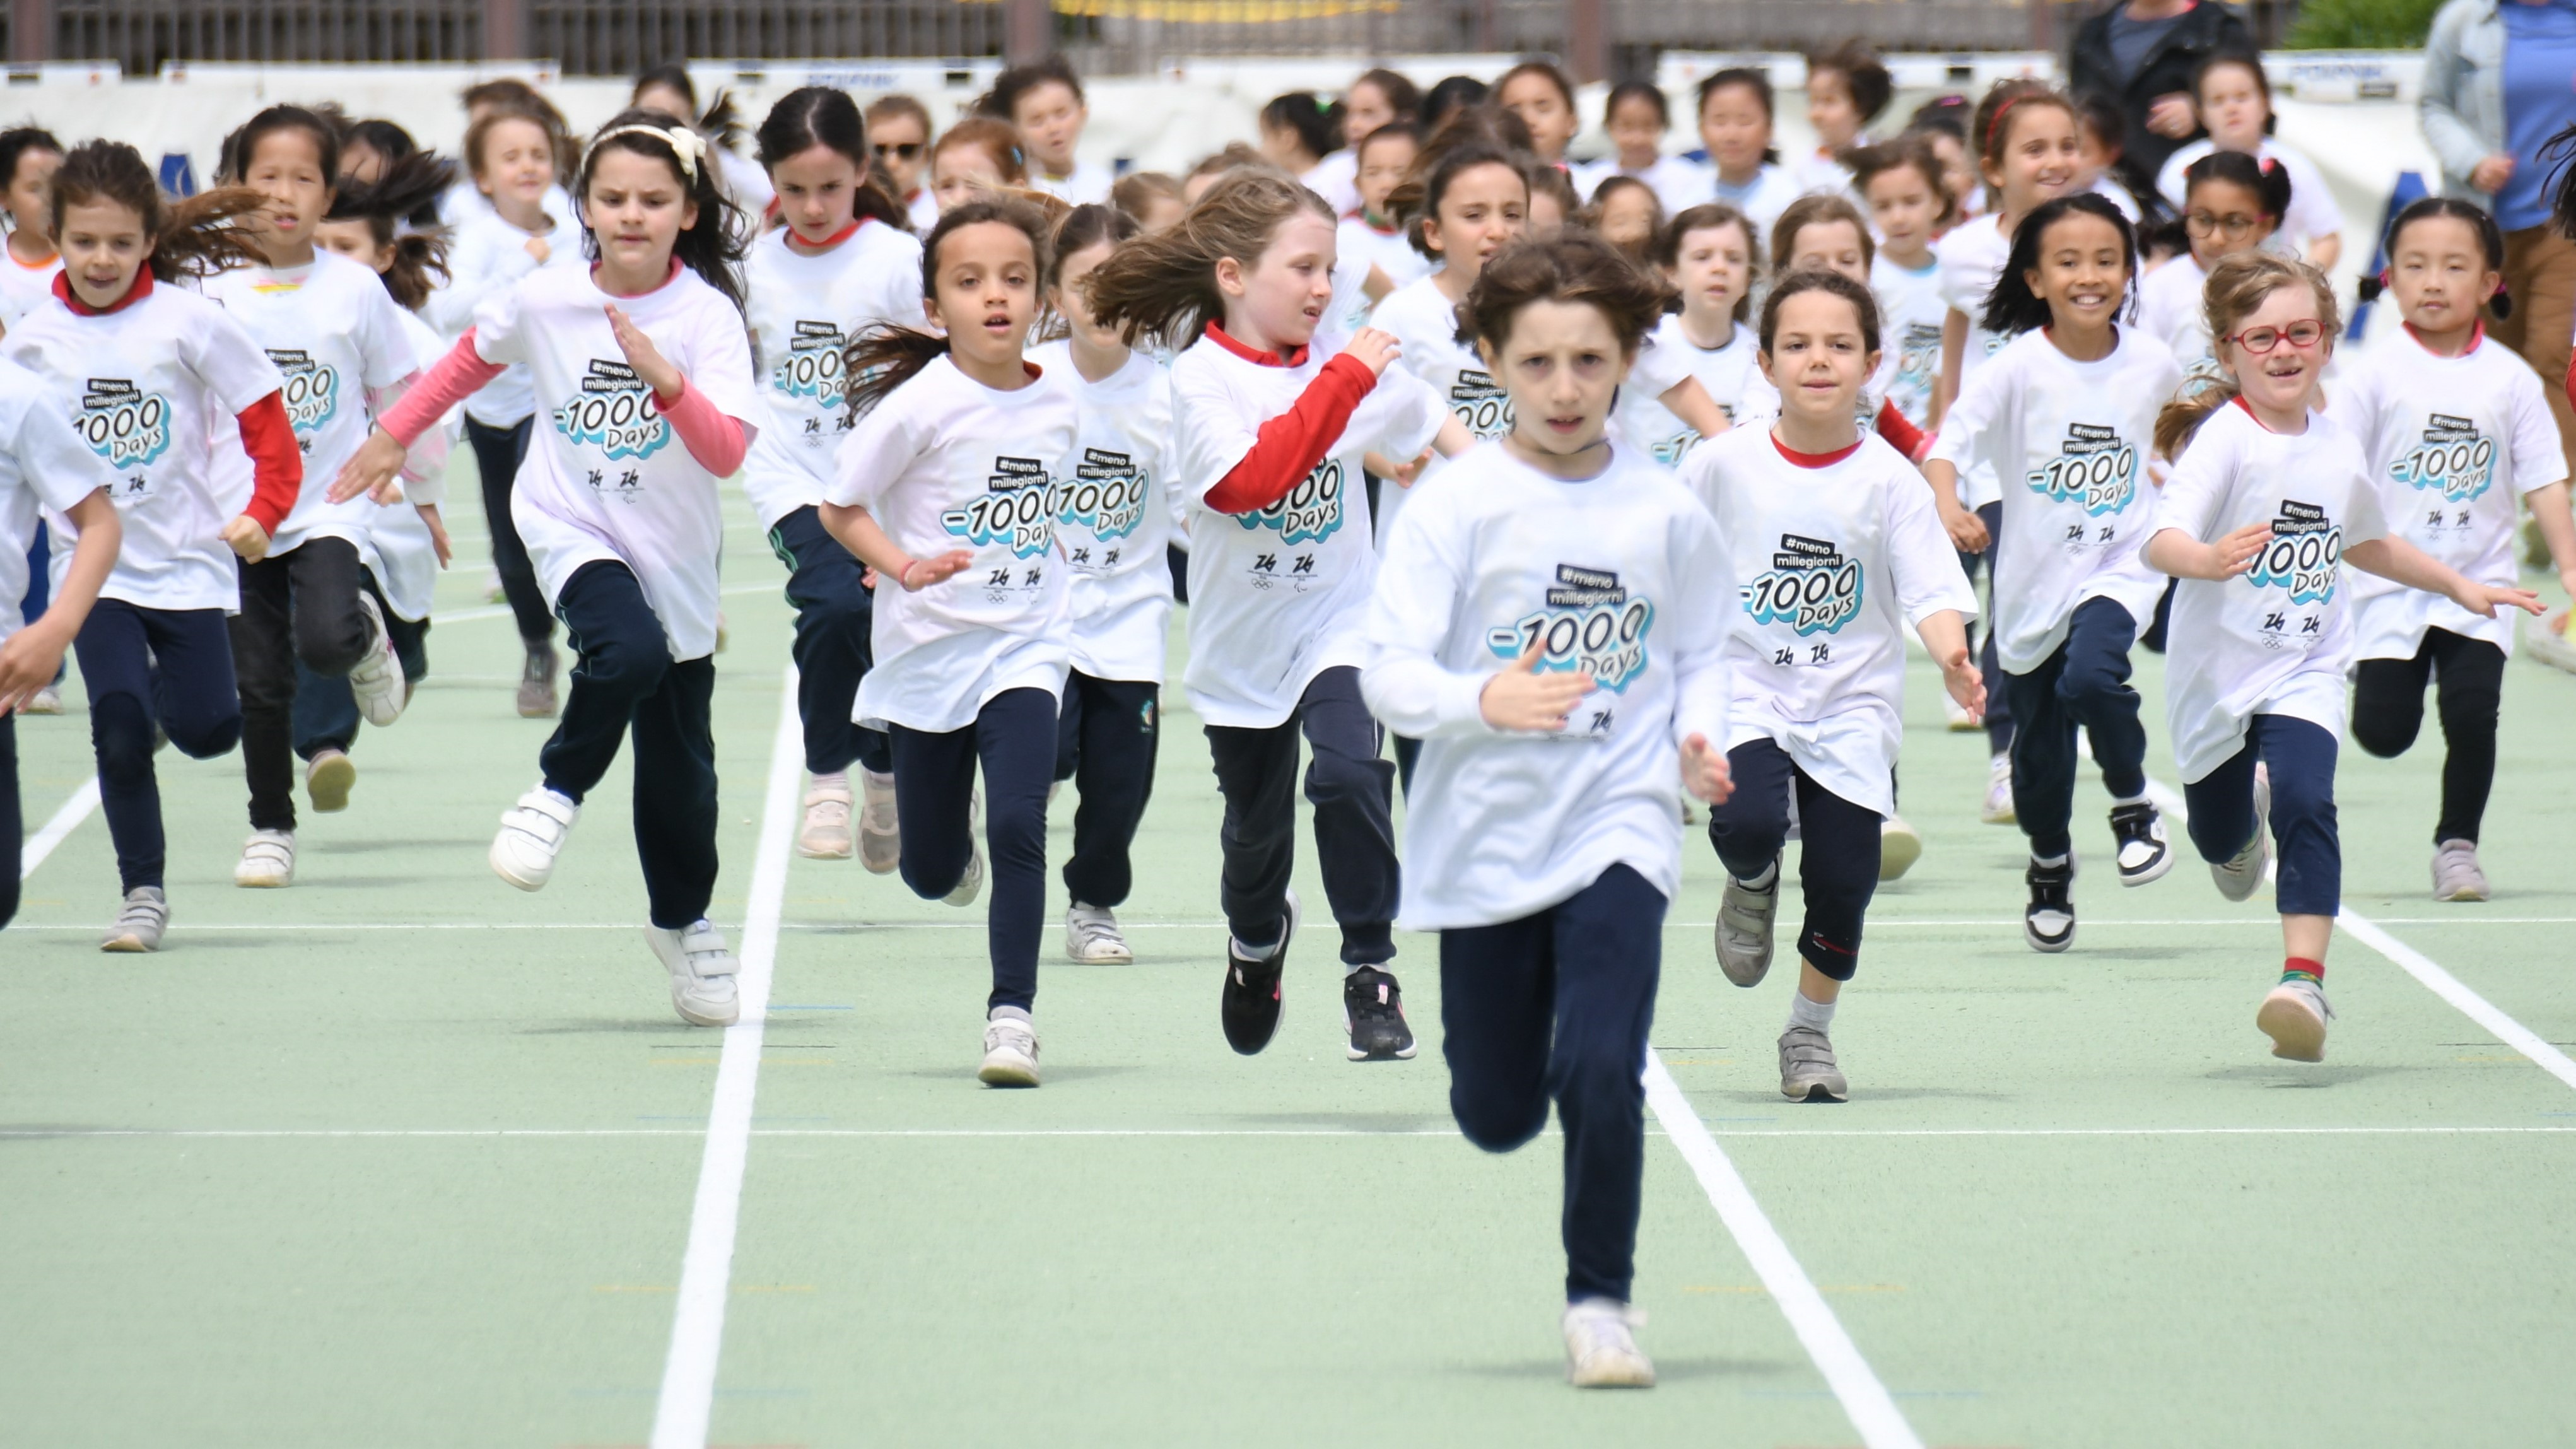 Dei bambini che corrono su un campo di atletica con la maglia di Milano Cortina 2026